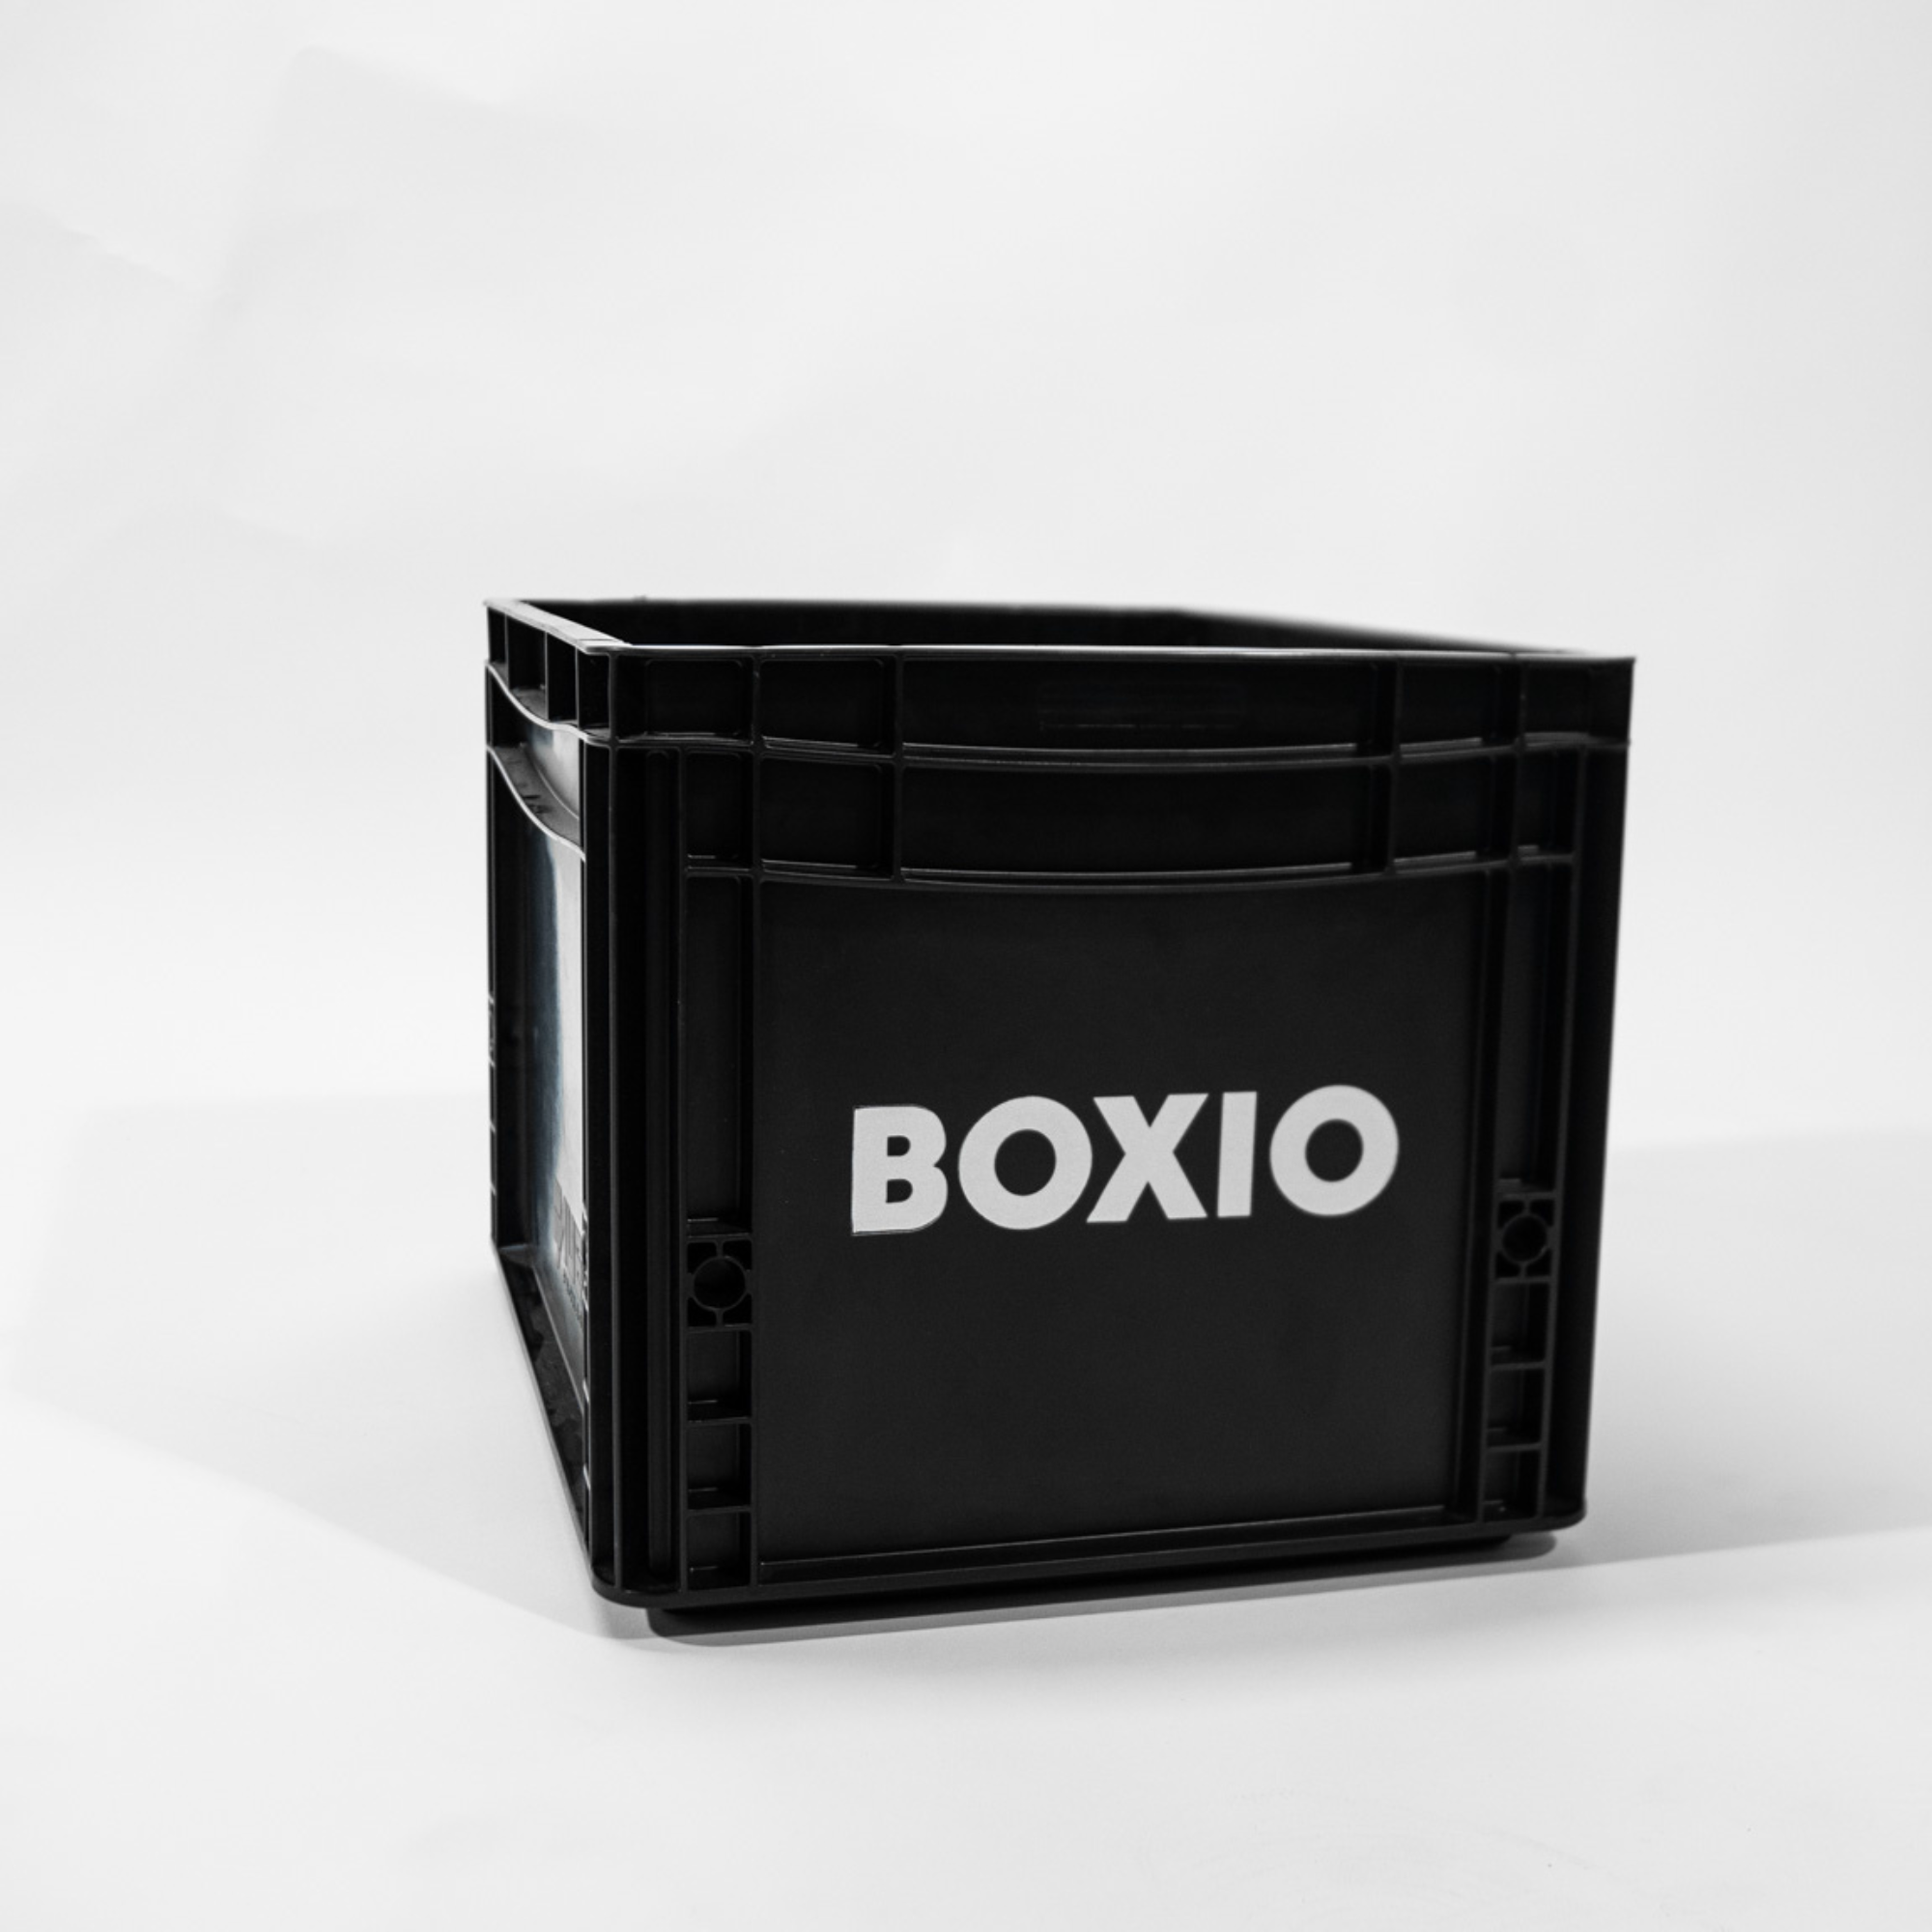 Eurobox "BOXIO" avec perçages pour BOXIO - WC